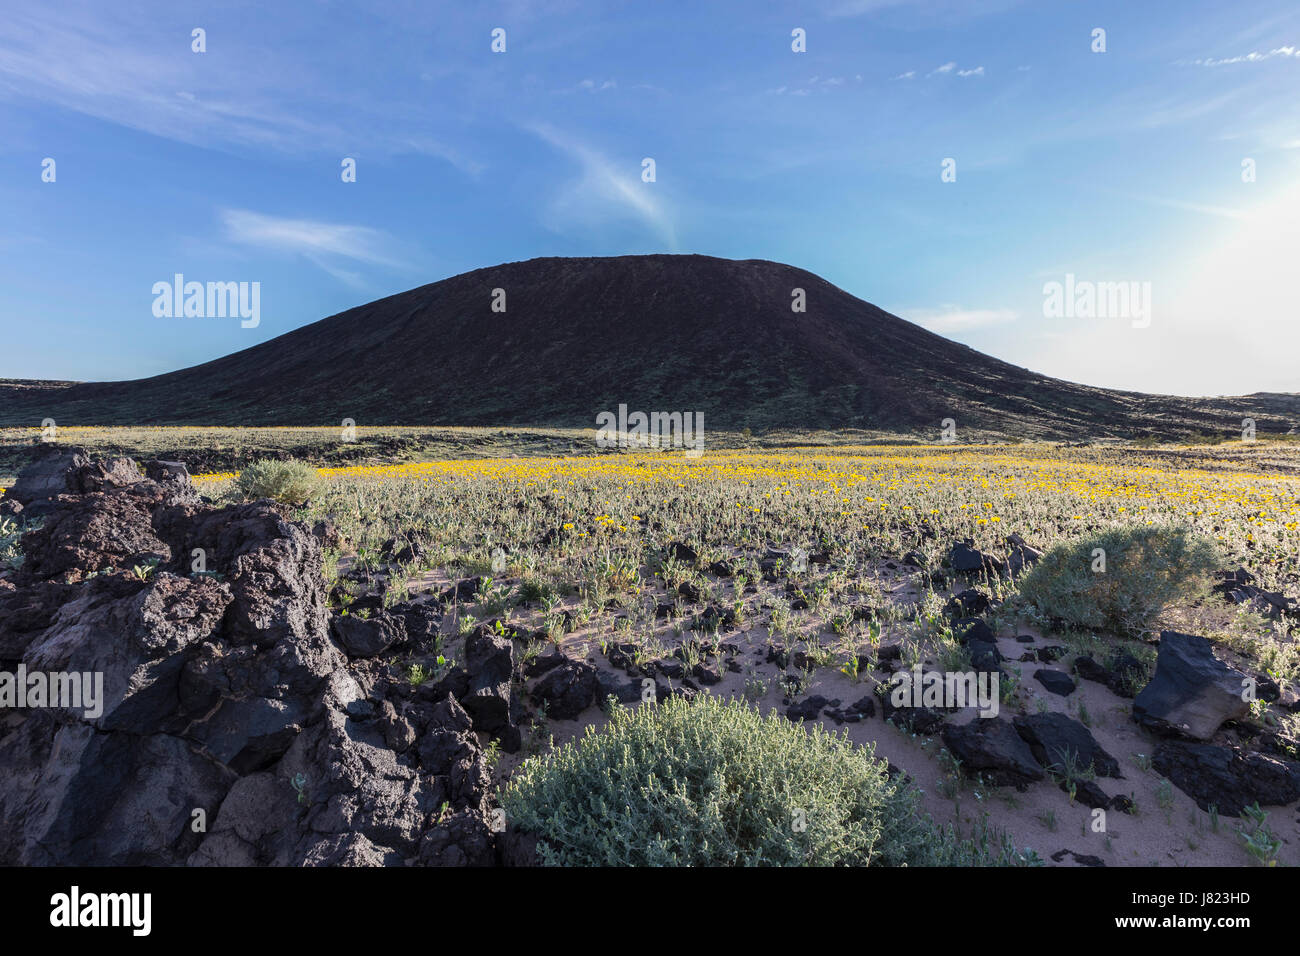 Amboy Crater mountain volcanique avec le printemps fleurit dans le désert de Mojave en Californie. Banque D'Images